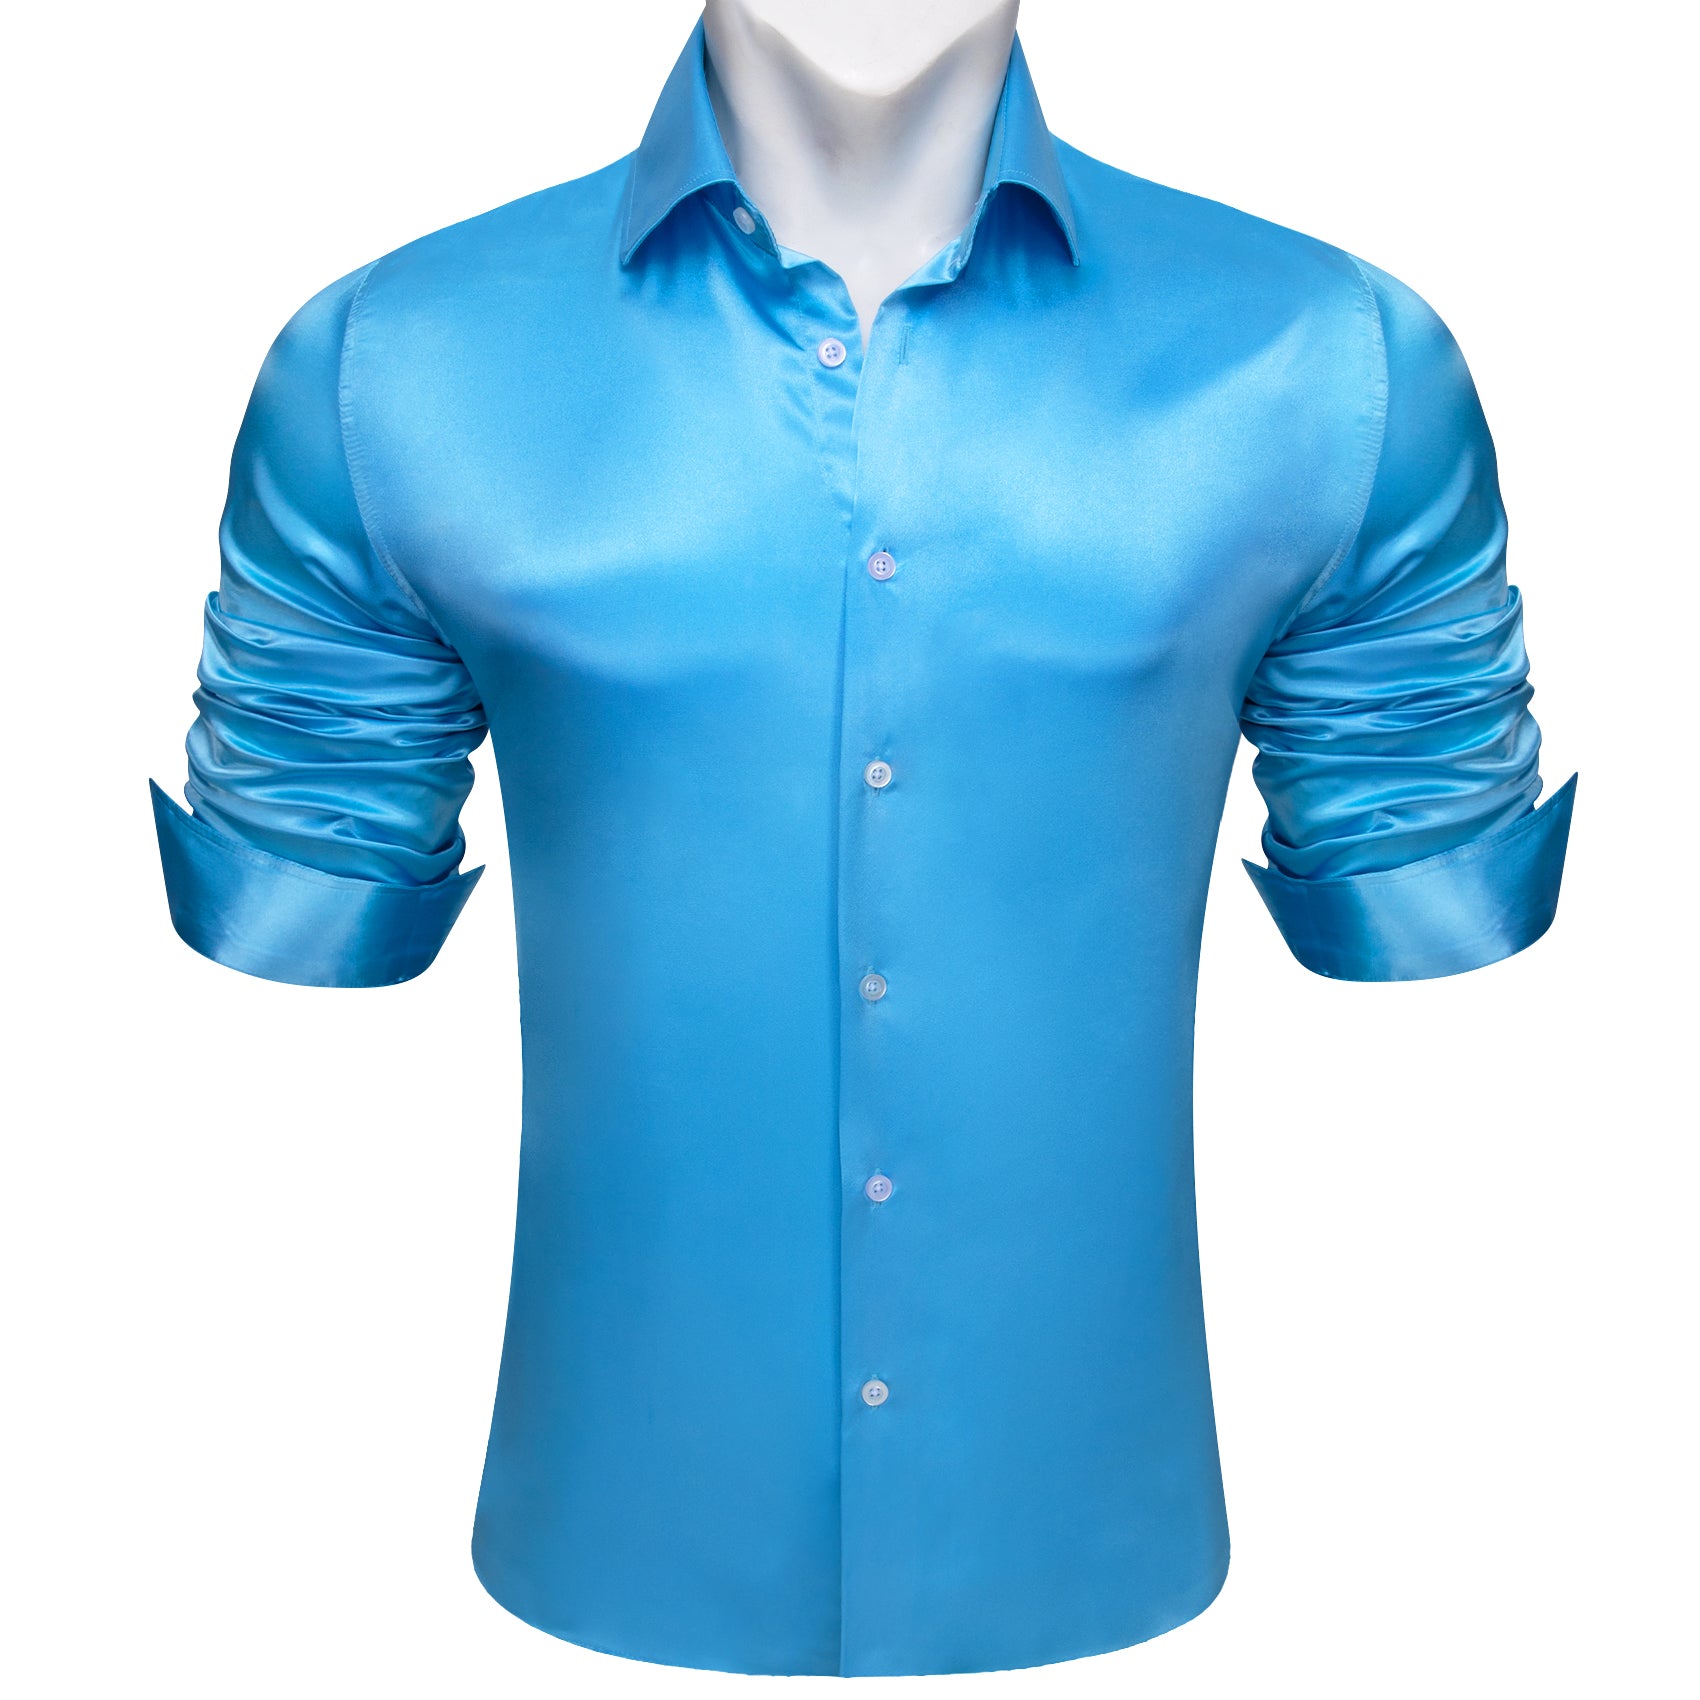 Barry.wang Sky Blue Solid Silk Men's Long Sleeve Shirt